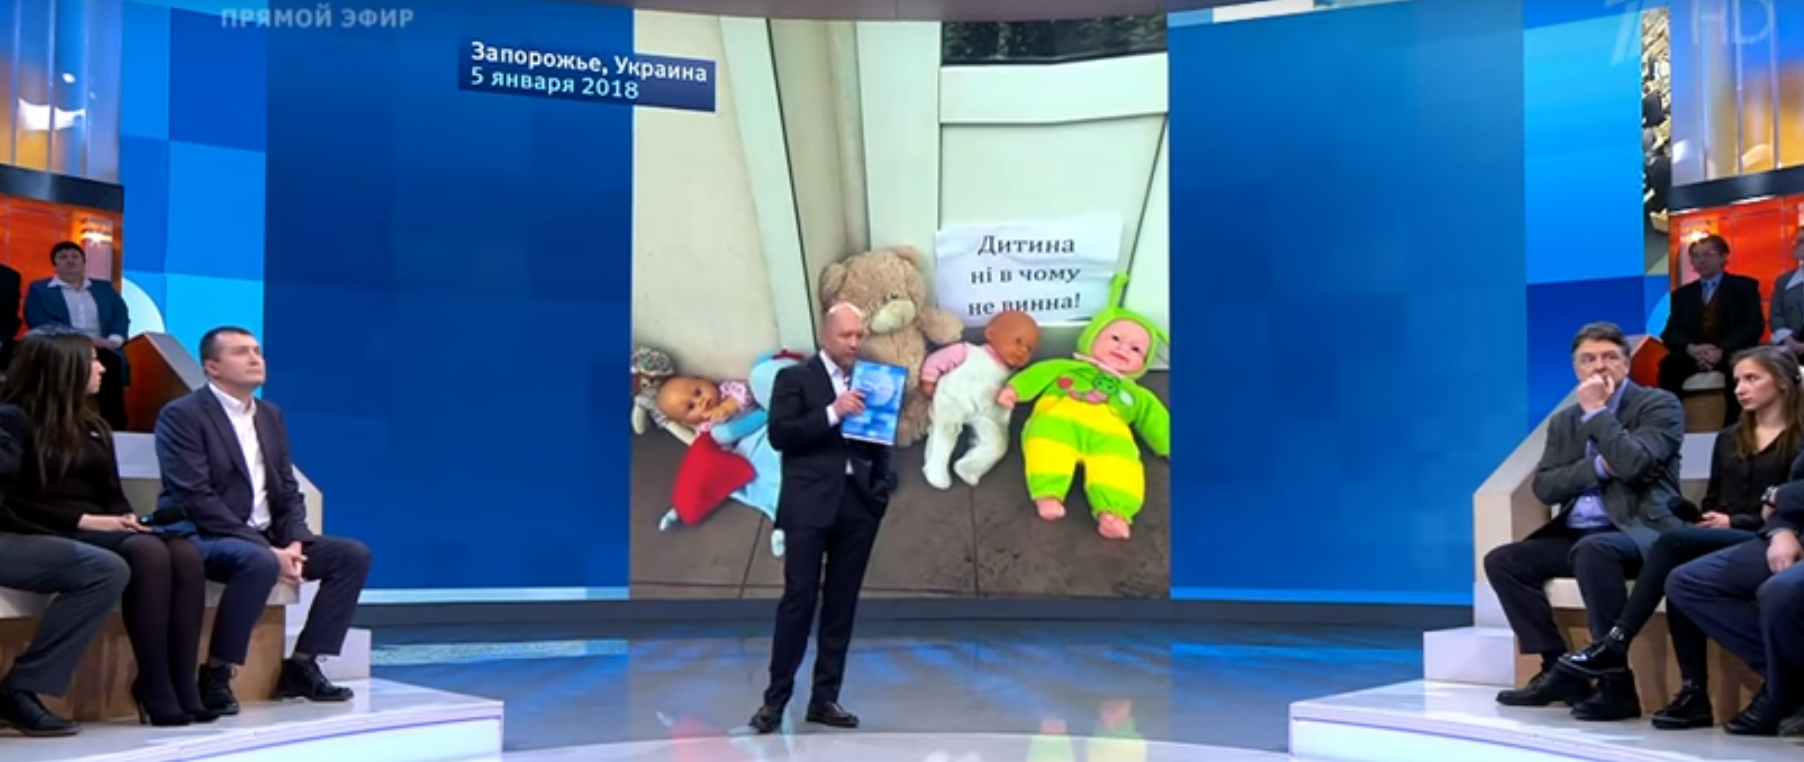 Церковный скандал в Запорожье  с отпеванием ребенка, стал топовой темой на российском ТВ - ВИДЕО